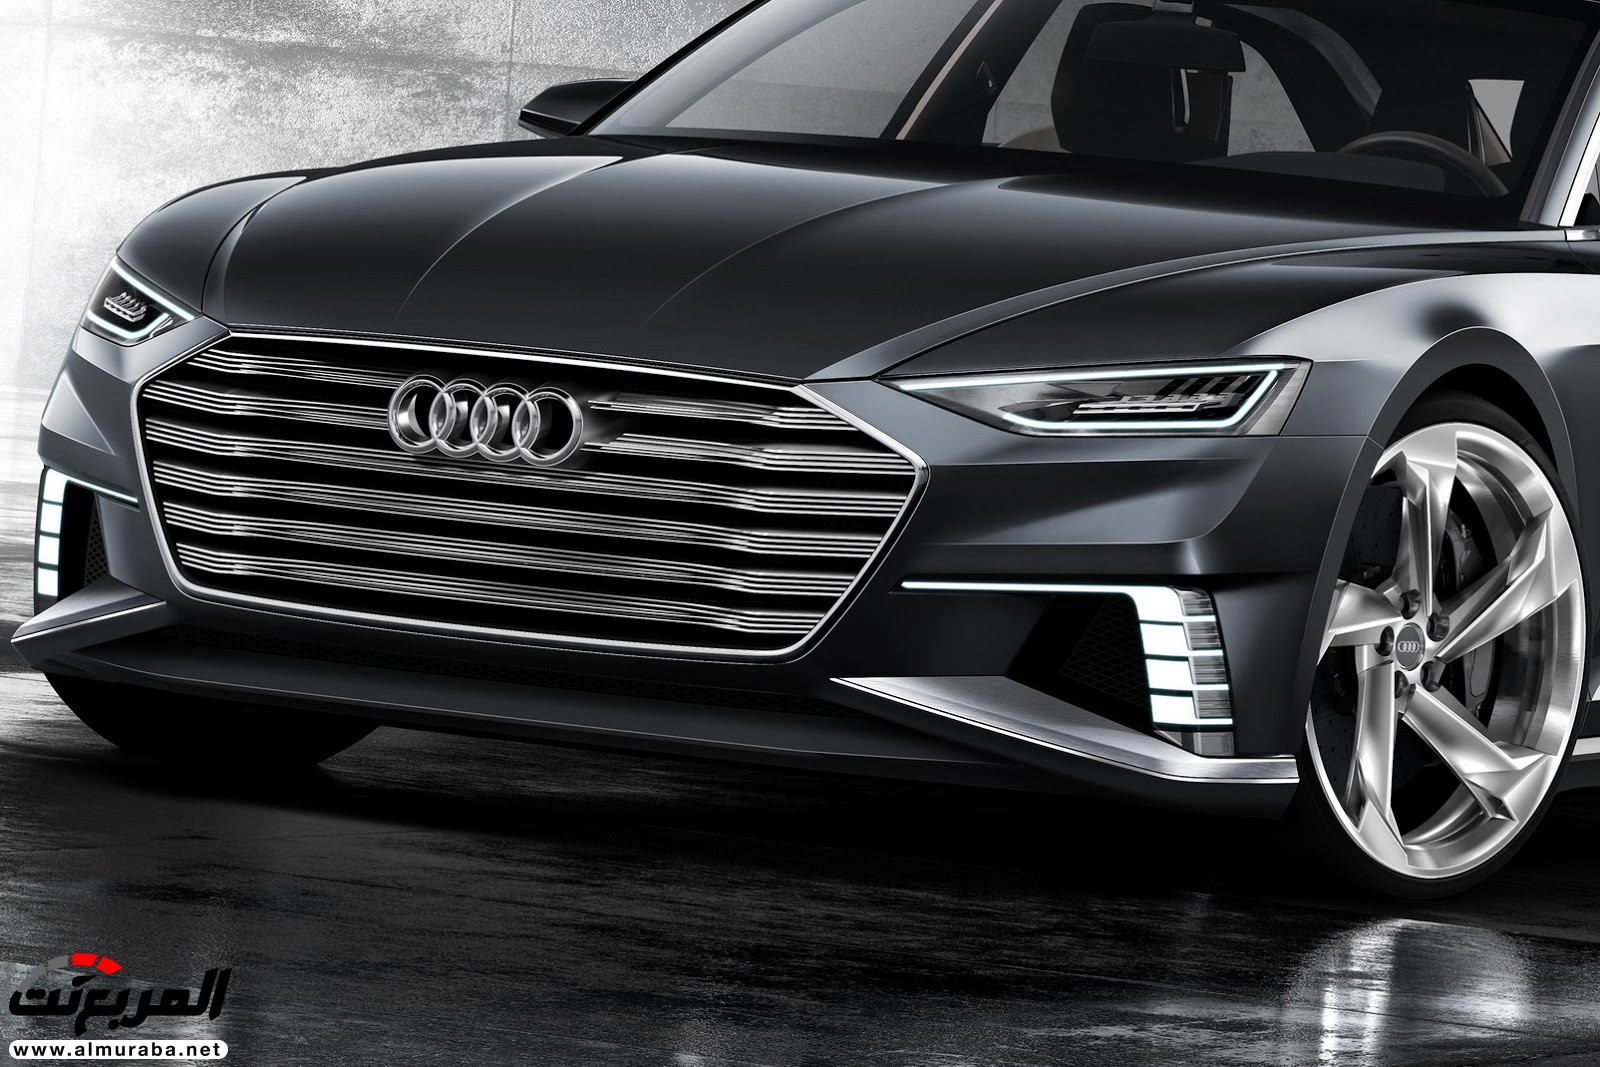 "أودي" A6 الجيل القادم 2019 سيتغير شكلها جذريا وسيتم تدشينها خلال العام المقبل Audi 5